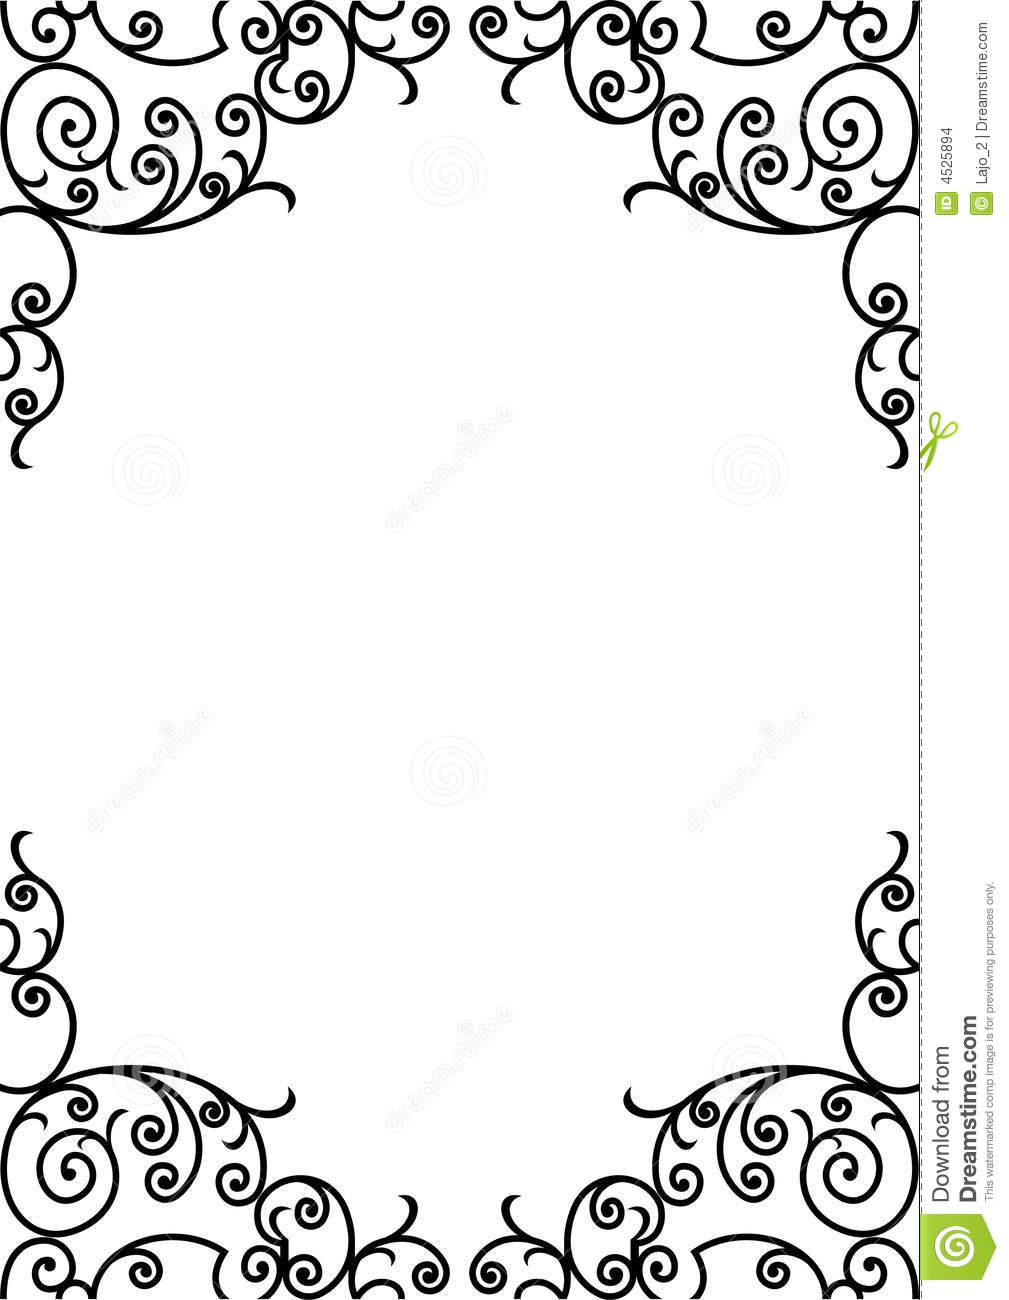 Black and White Decorative Border Paper